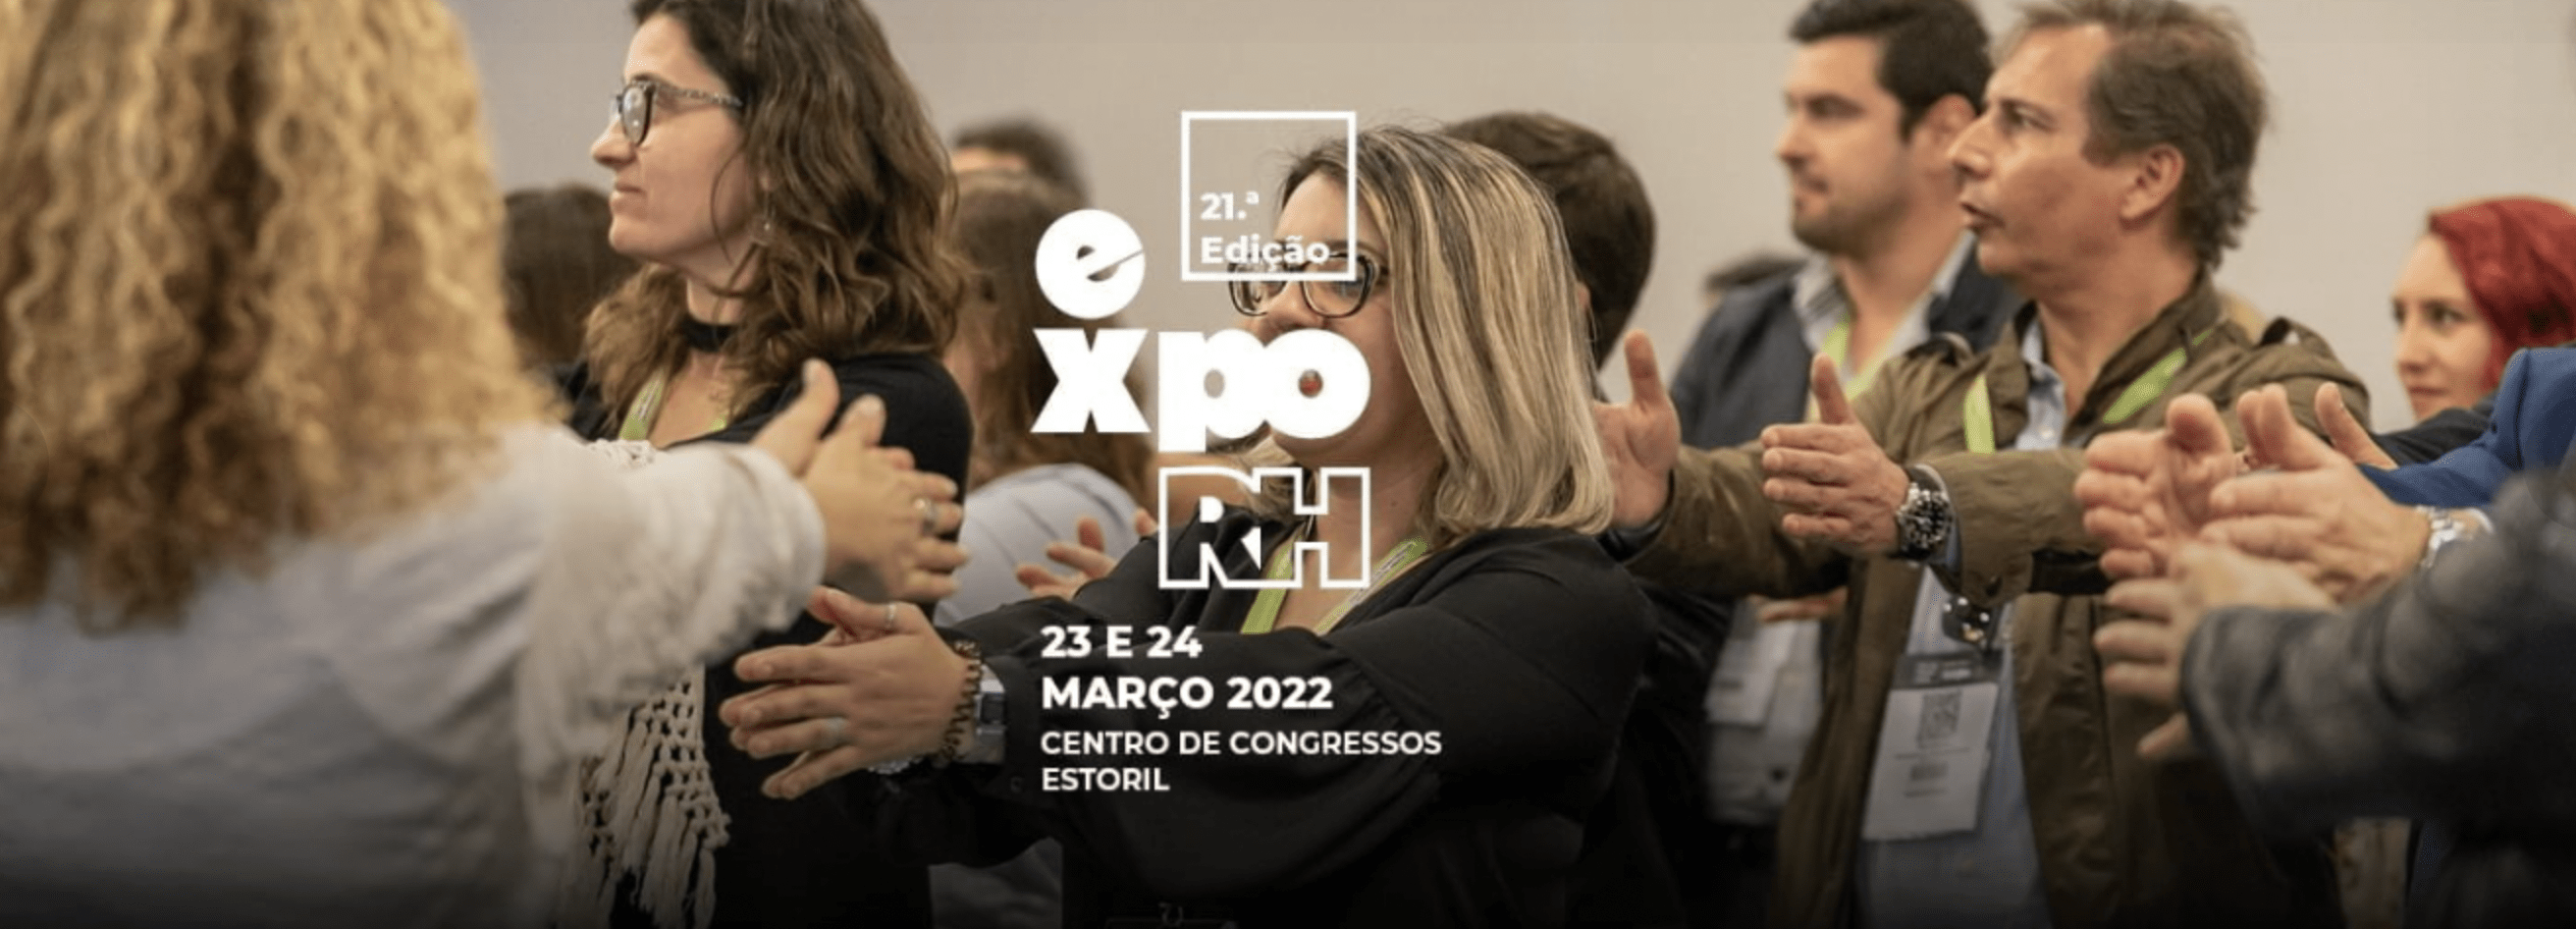 Congresso – Expo RH – O maior evento de Recursos Humanos em Portugal